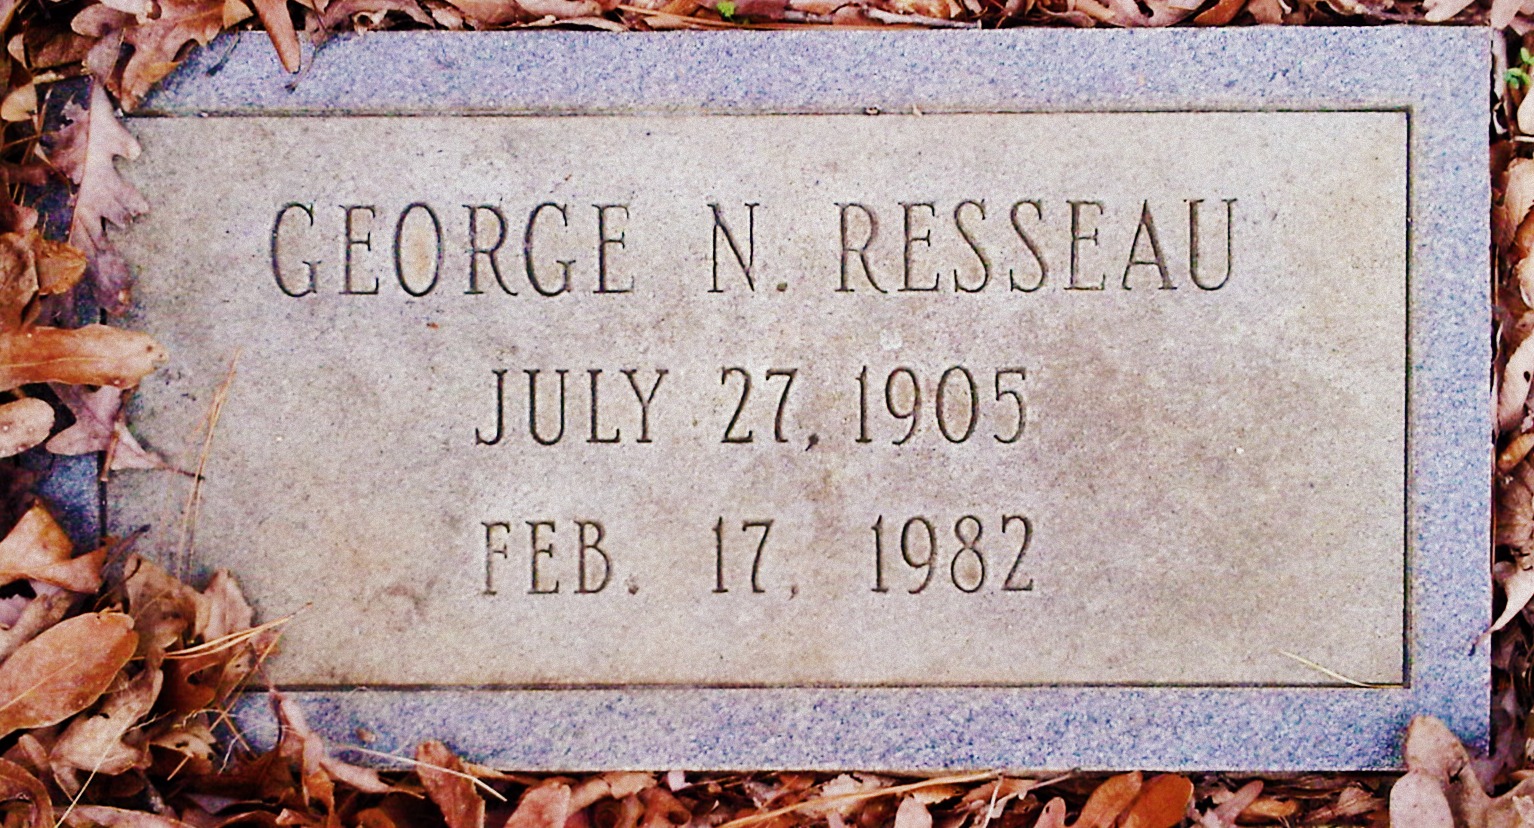 George N Resseau